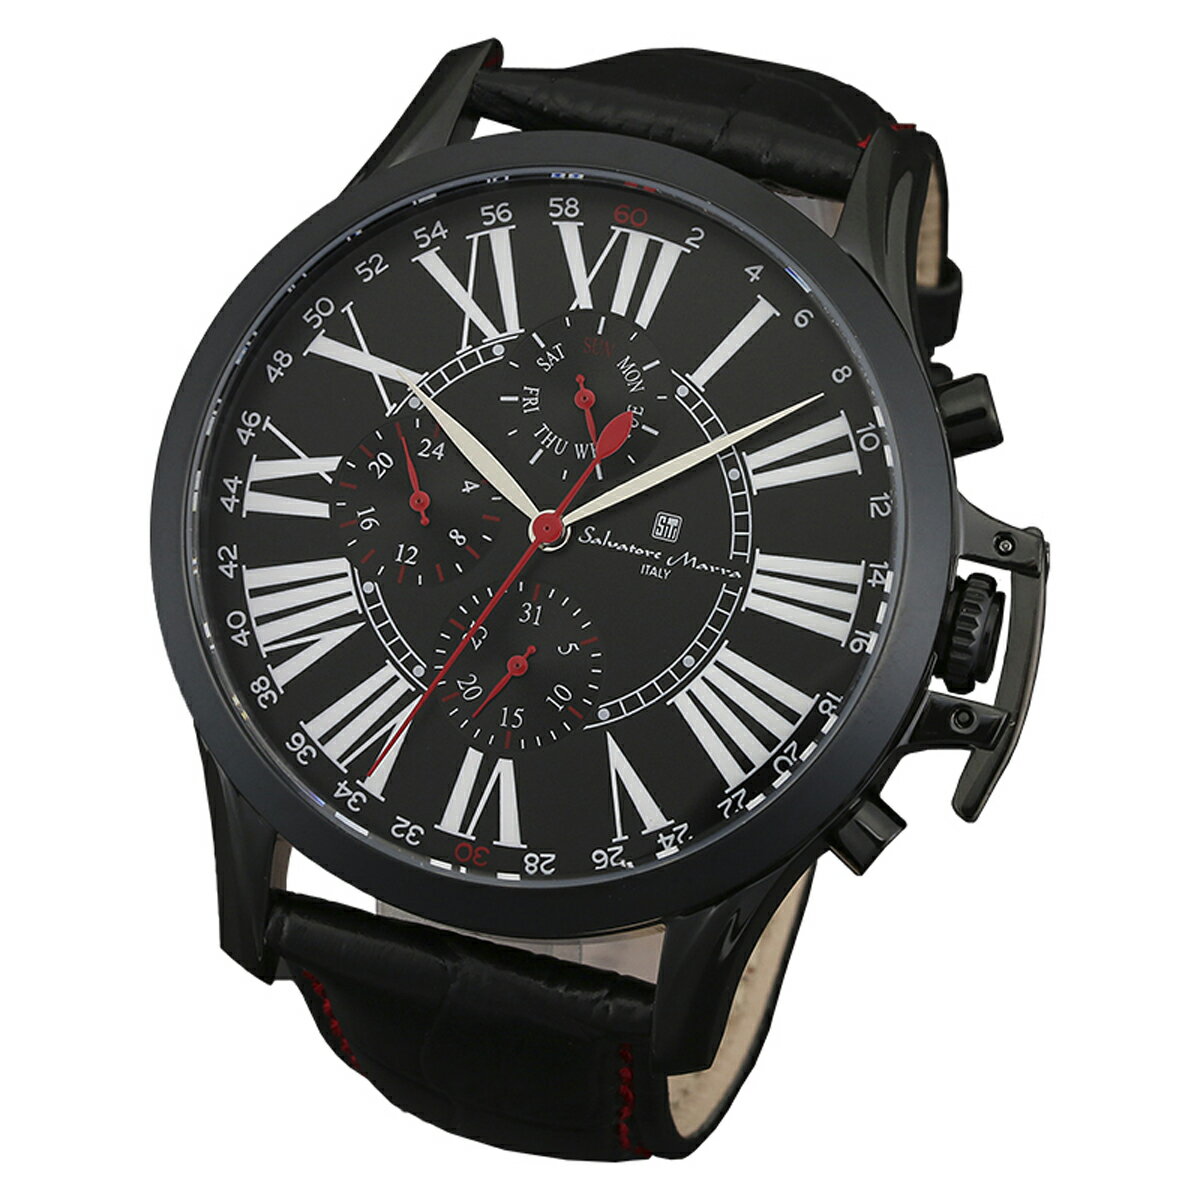 サルバトーレマーラ Salavatore Marra 腕時計 SM14123-IPBK クオーツ メンズ腕時計 レザーベルト ローマ数字 アナログ表示 日常生活防水 紳士用 時計